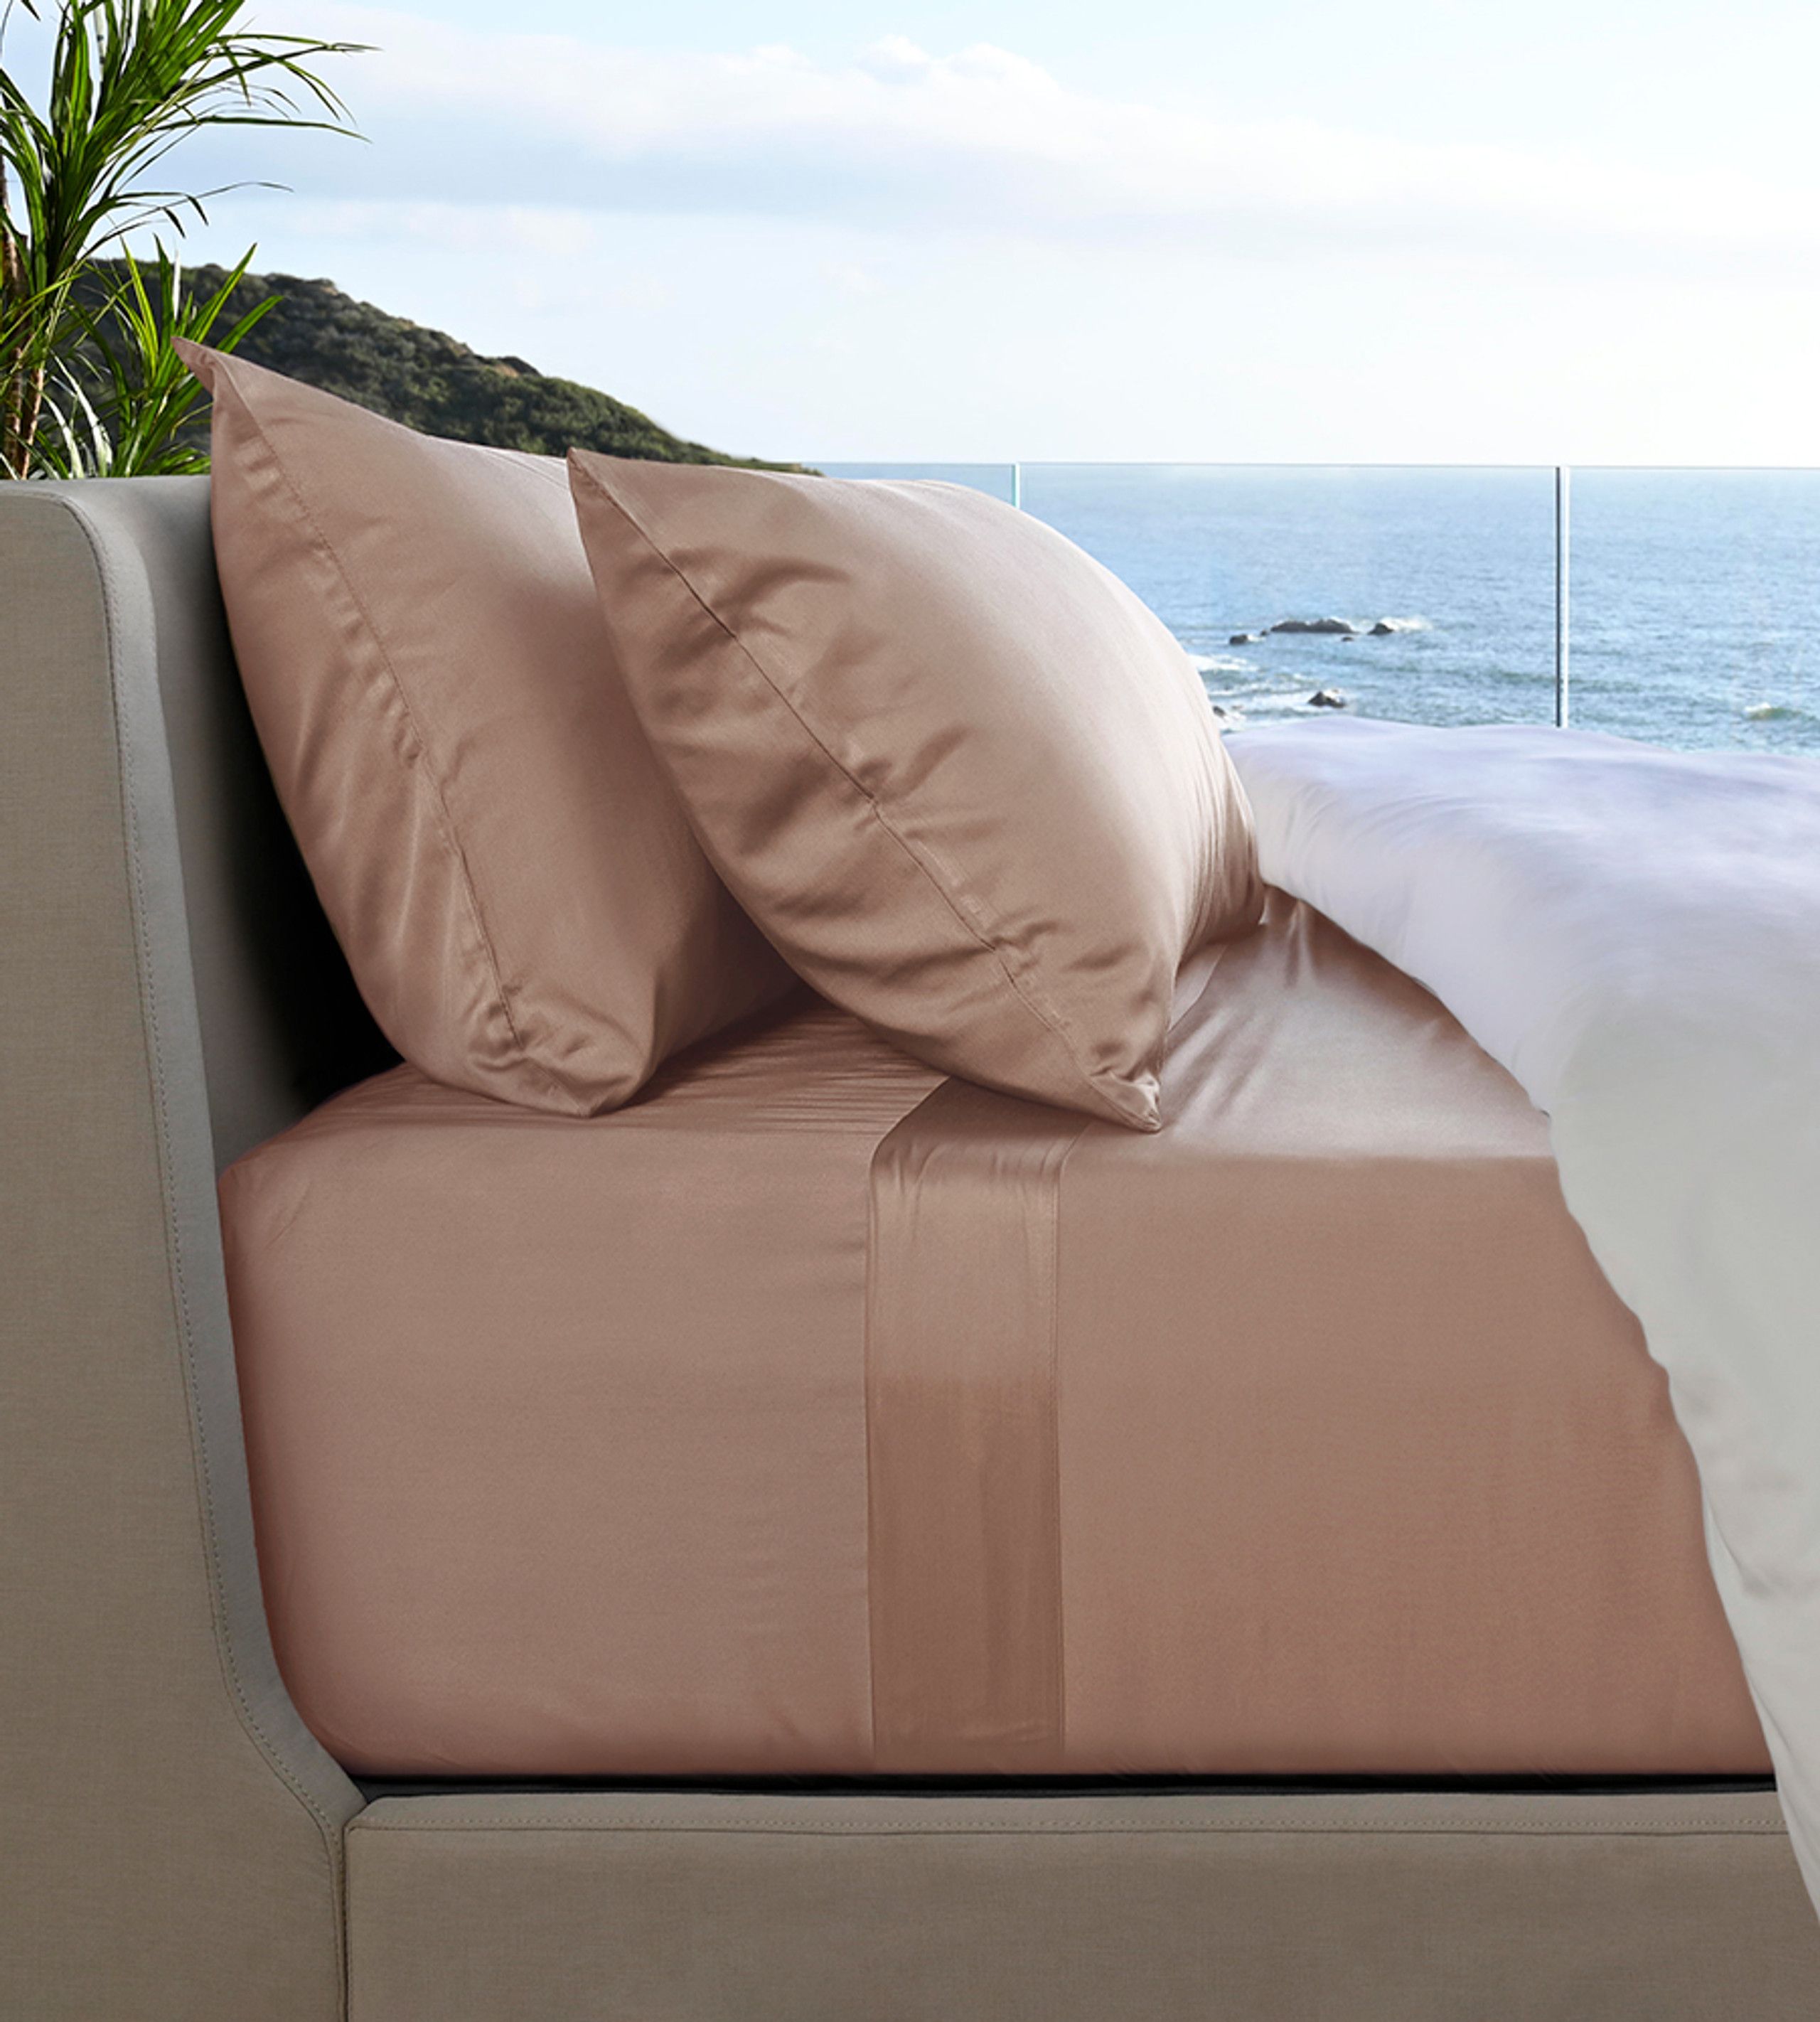 Resort Bamboo Bed Sheets | Cariloha